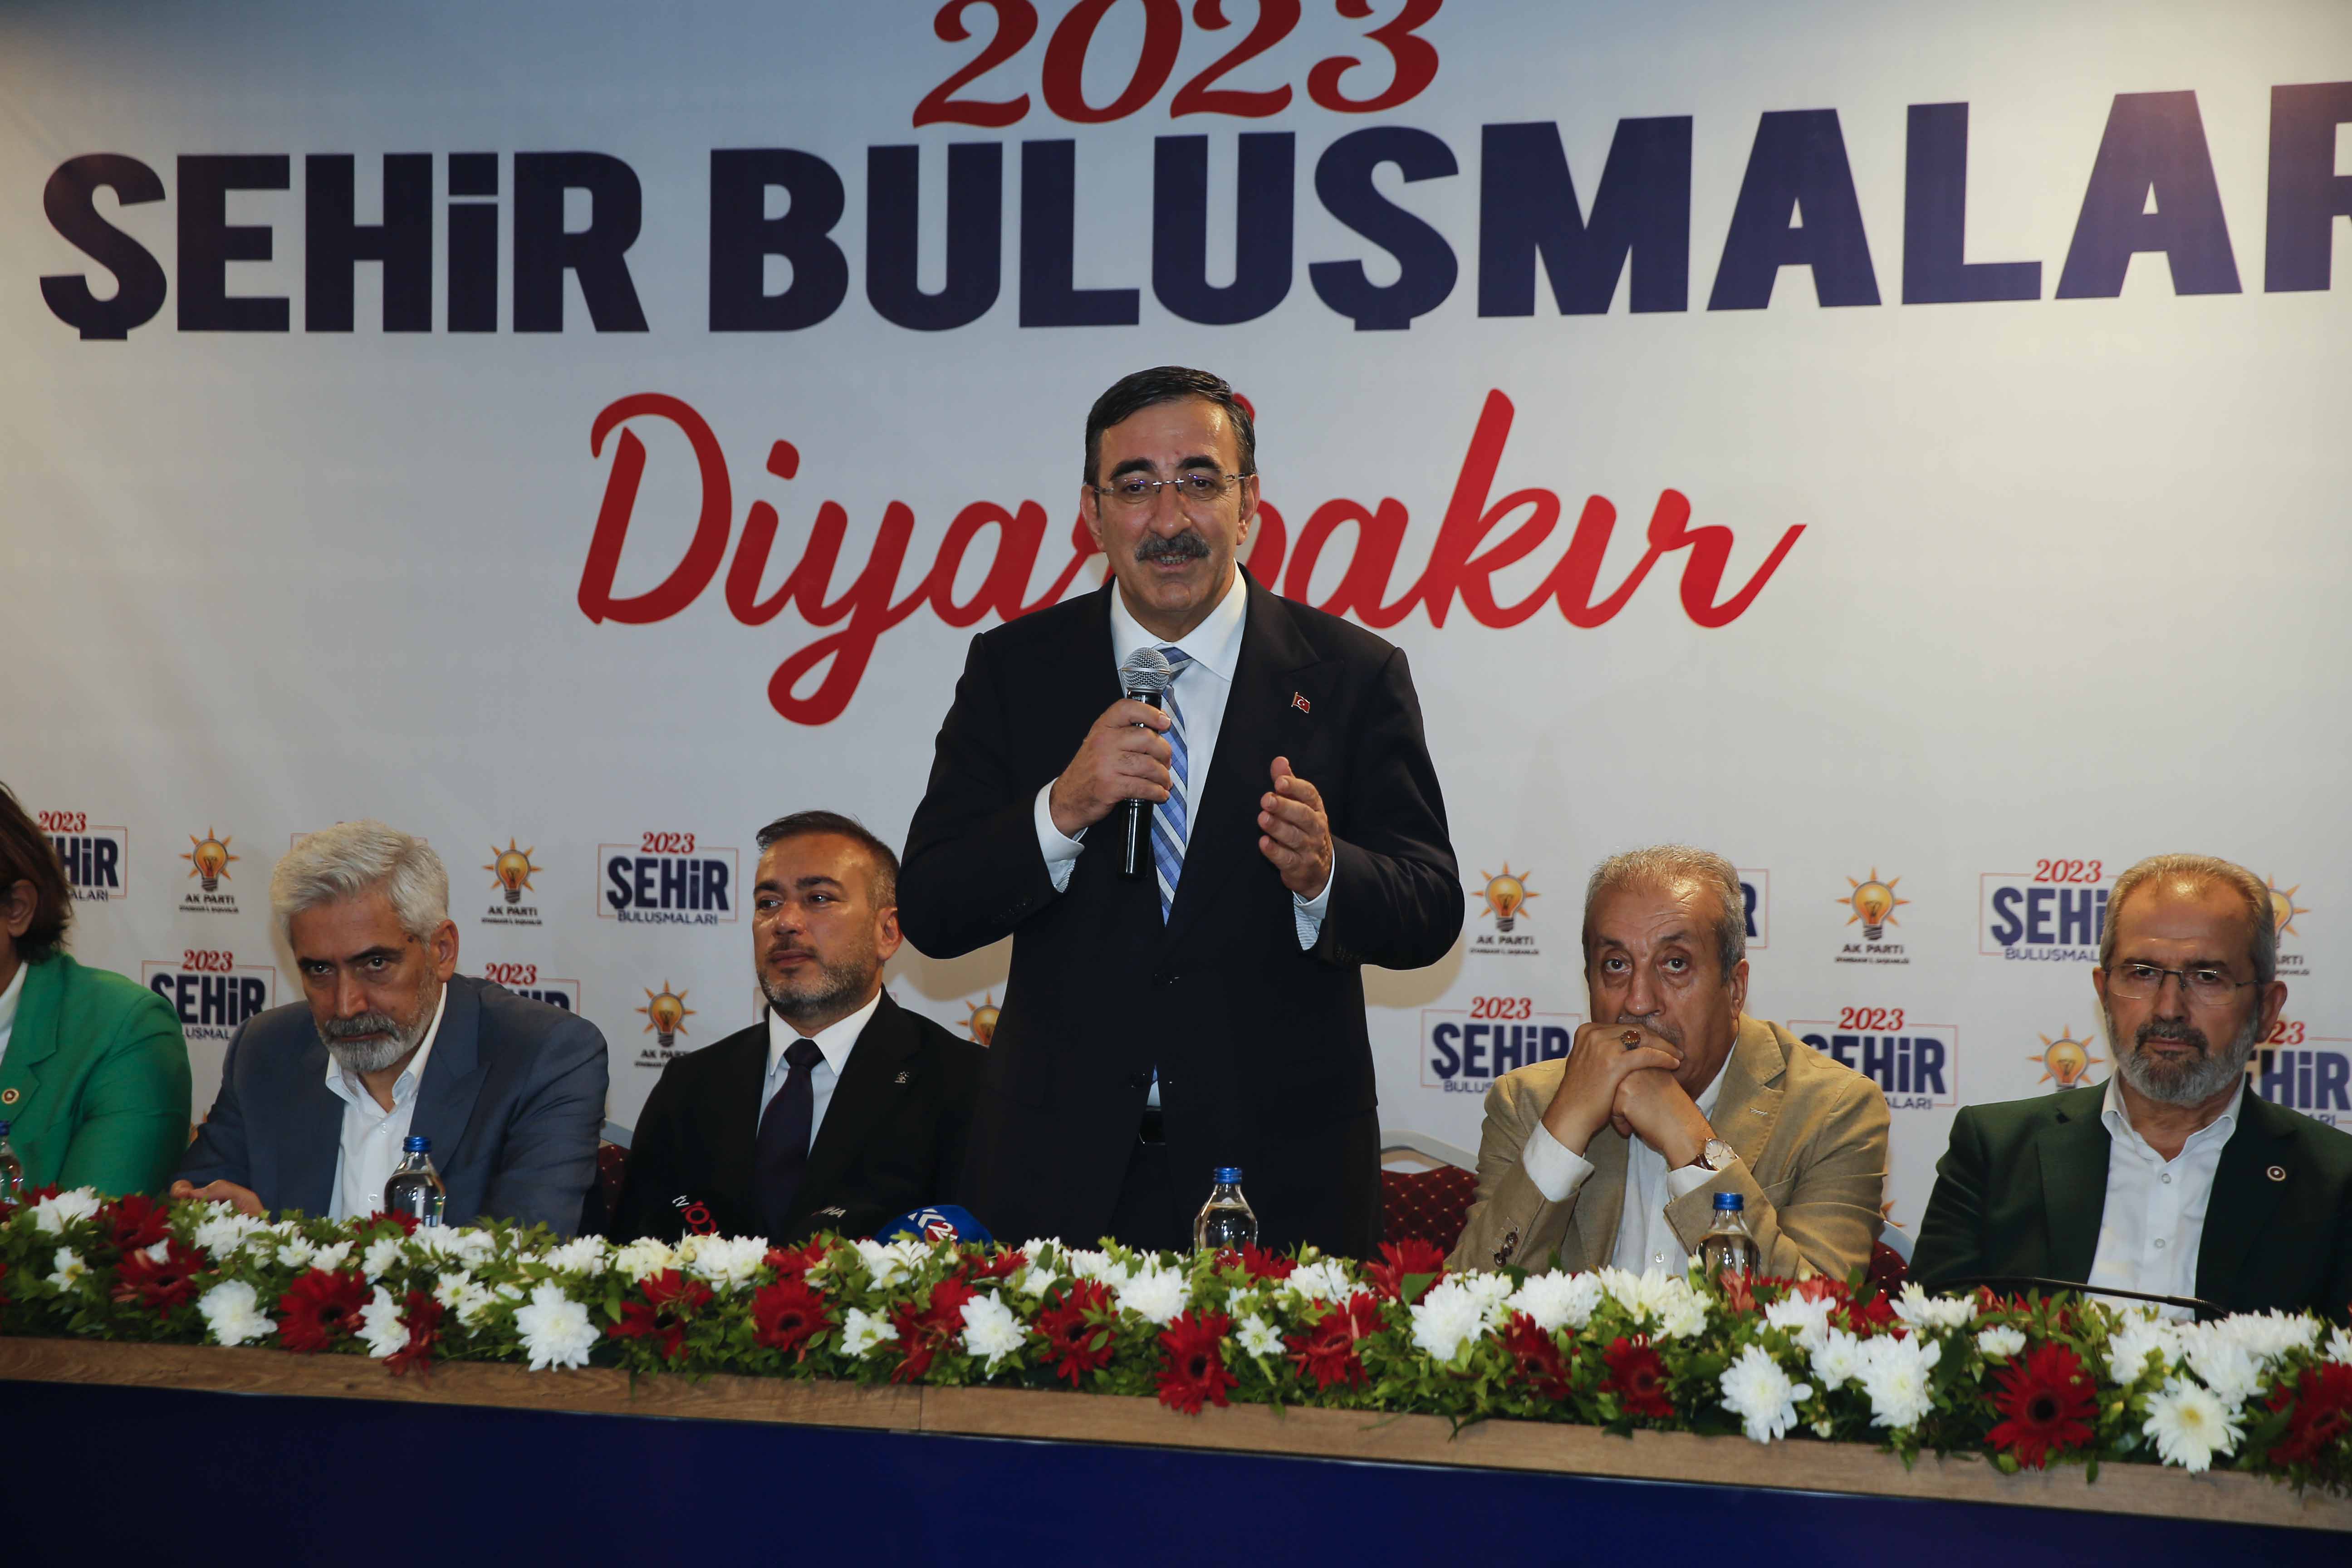 Cevdet Yılmaz: "Diyarbakır, Yeni Bir Dönüşüm Yaşayacak"